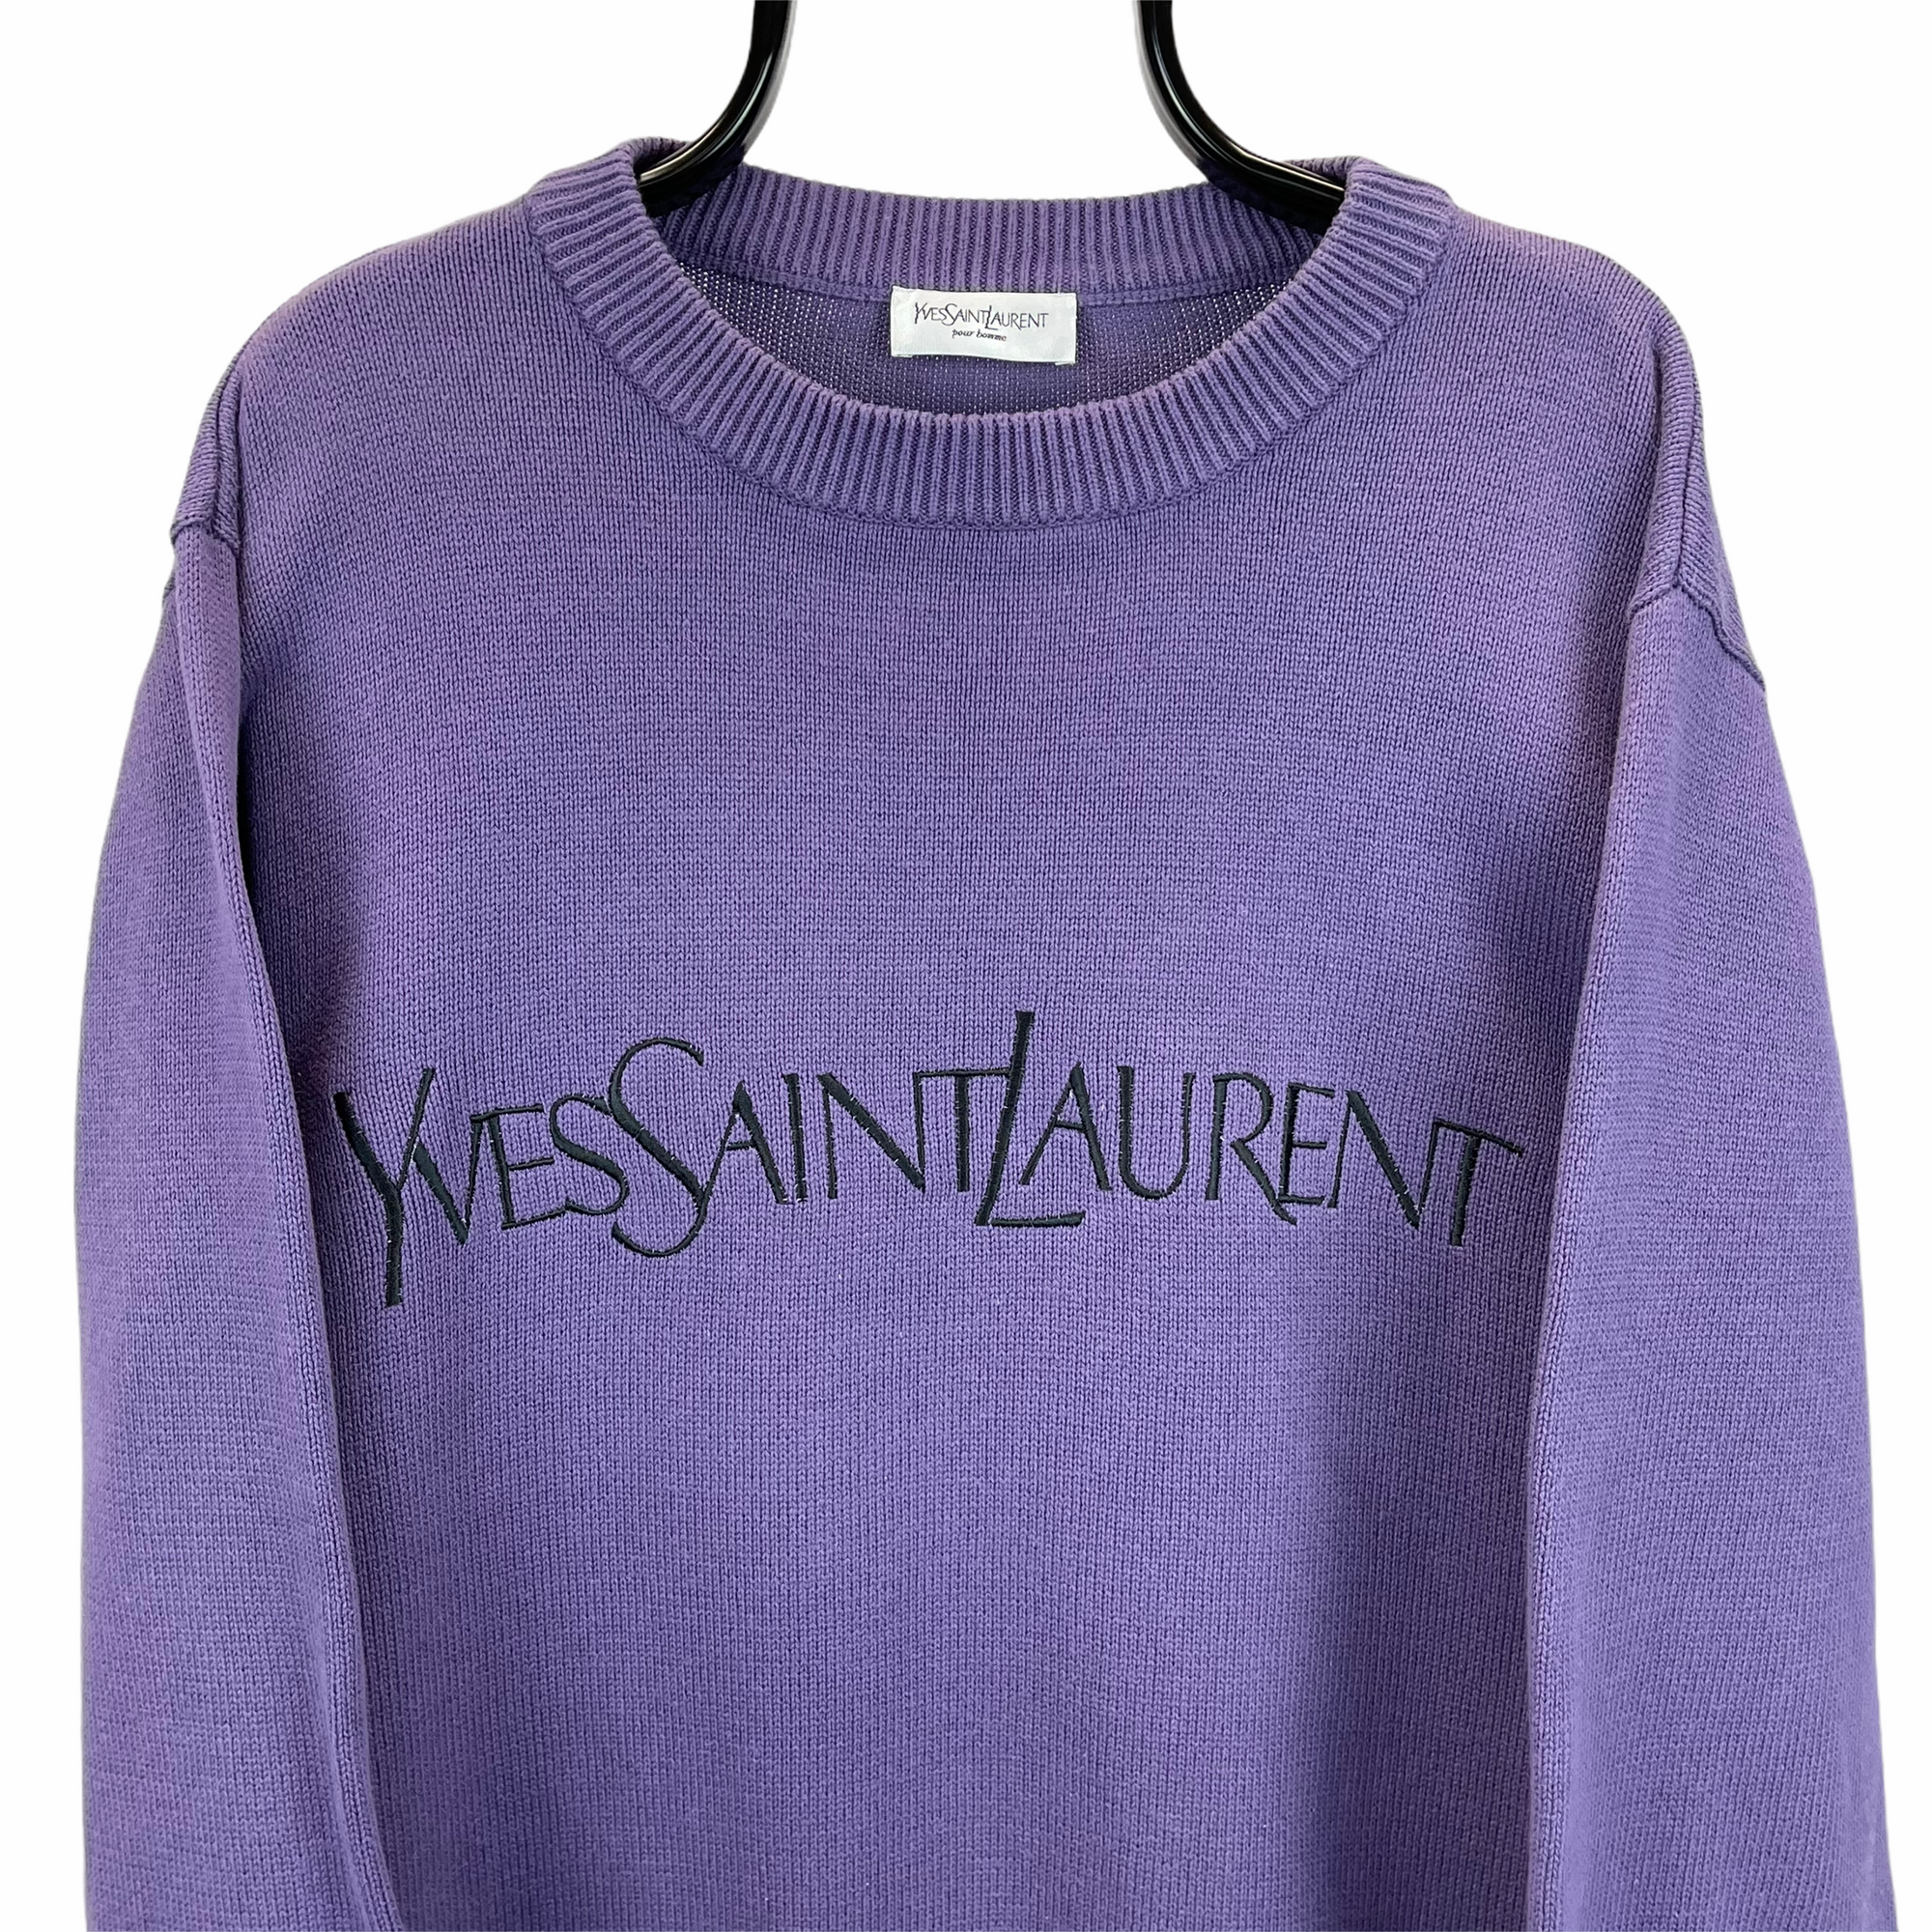 Vintage YSL Spellout Knit Sweater in Purple - Men's Large/Women's XL